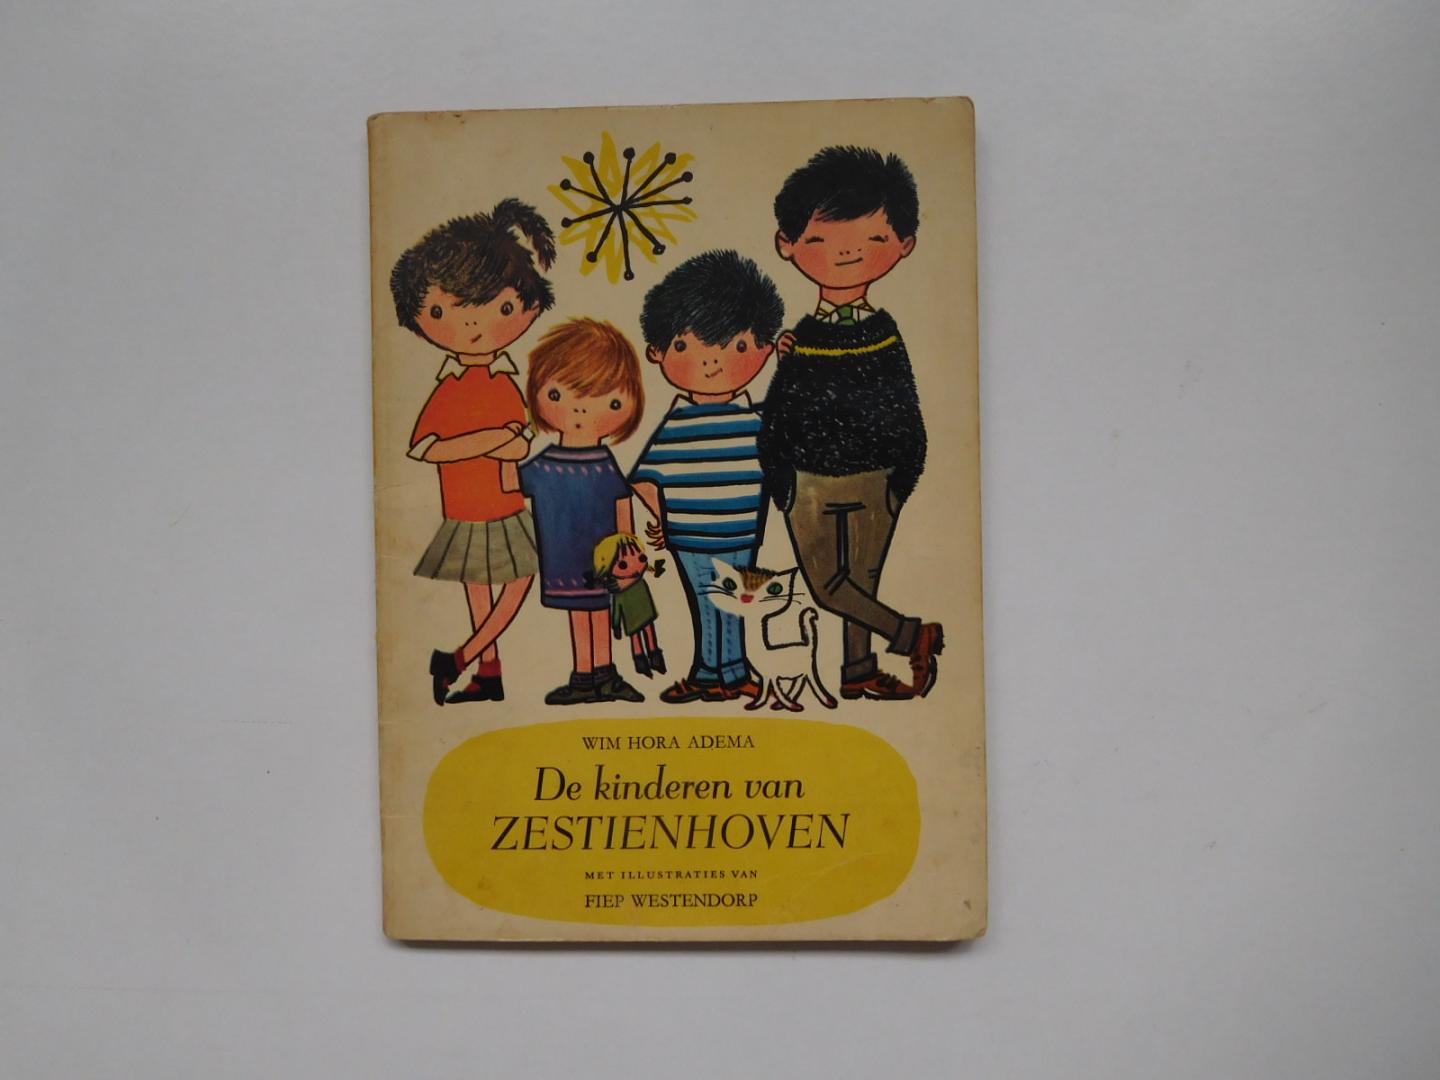 Wim Hora Adema - De kinderen van Zestienhoven met illustraties van Fiep Westendorp